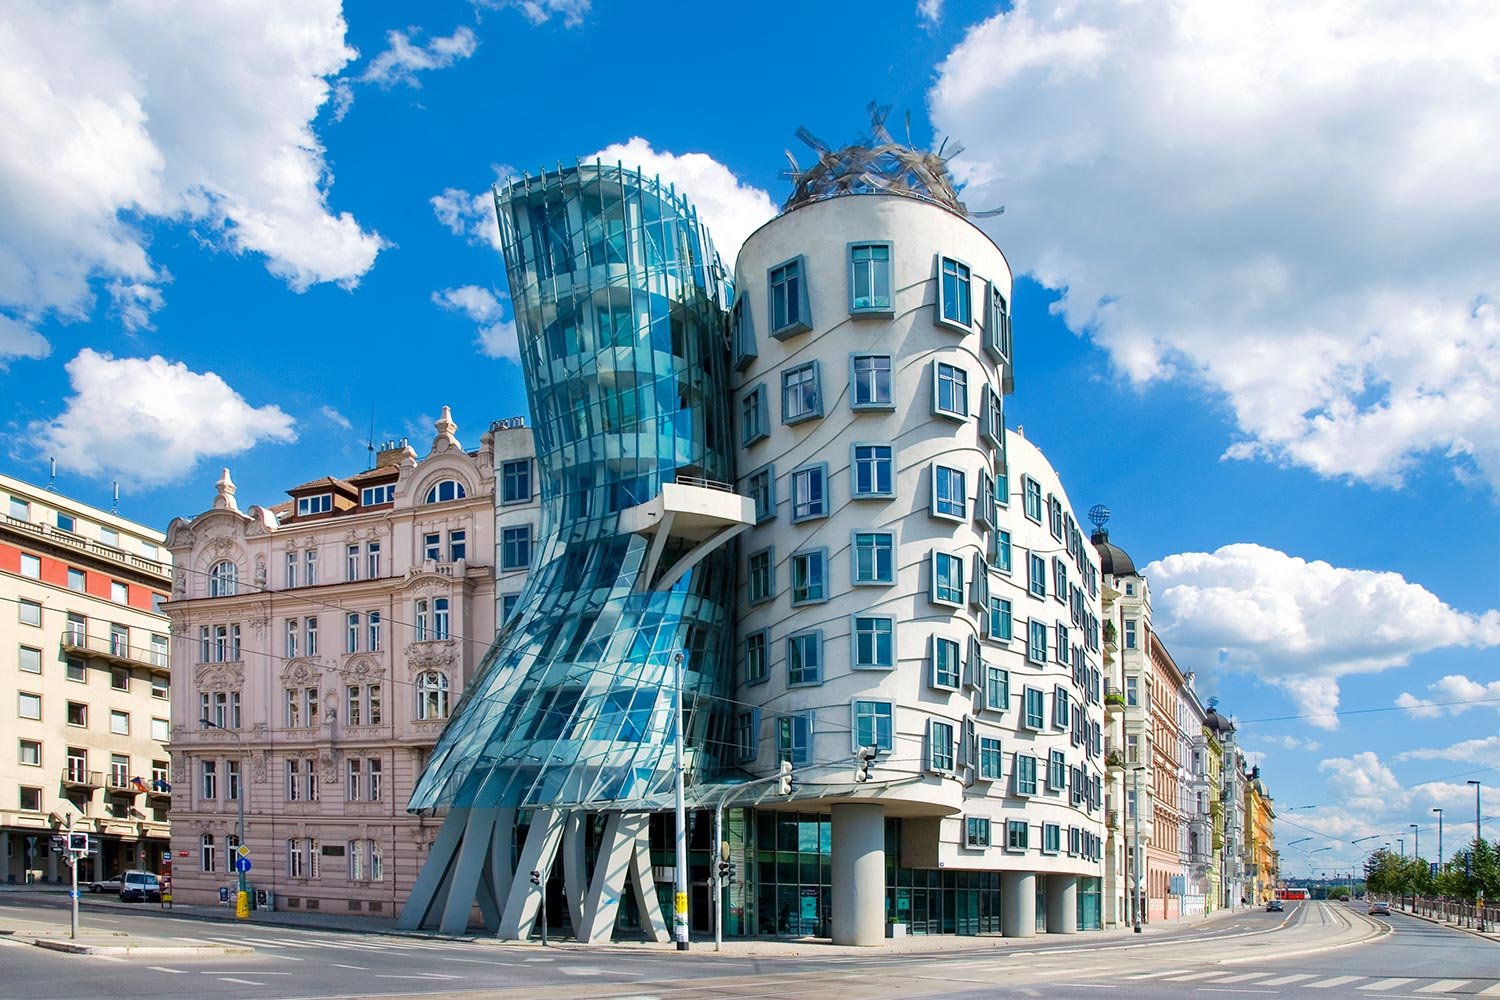 Design Apartment next to Louis Vuitton Building in Czech Republic